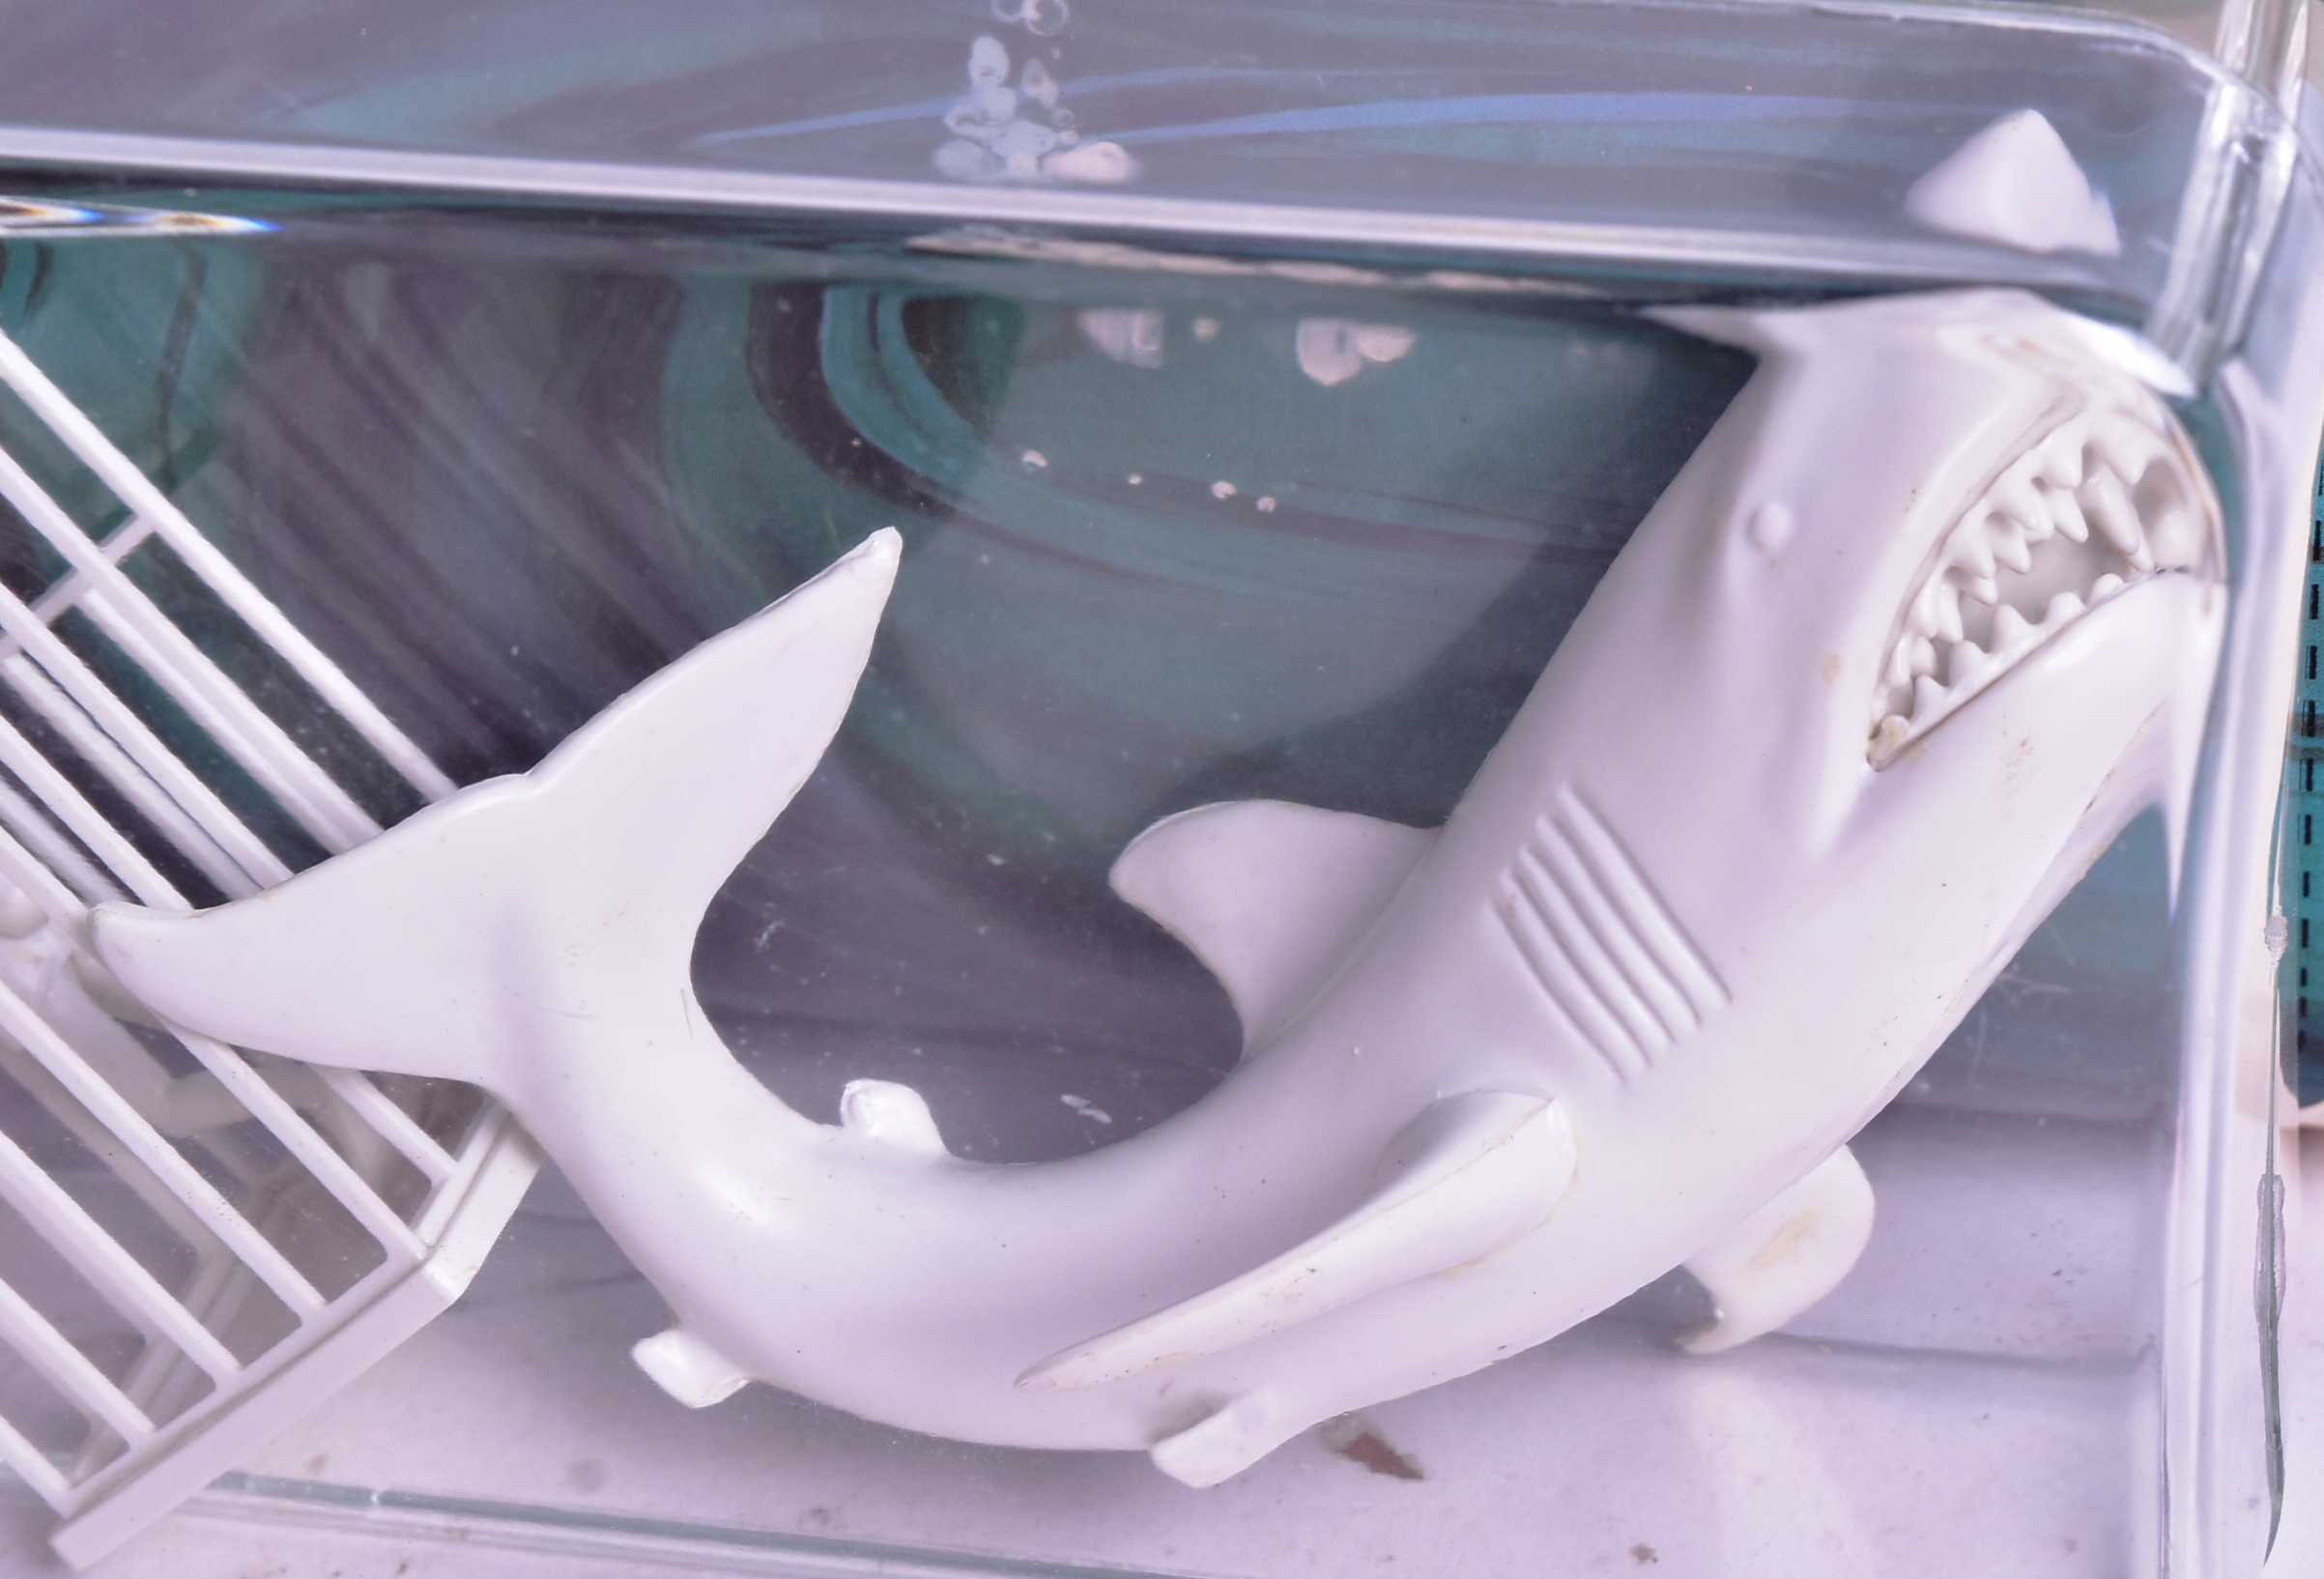 MODEL KIT - VINTAGE ADDAR SUPER SCENES - JAWS - Image 4 of 5